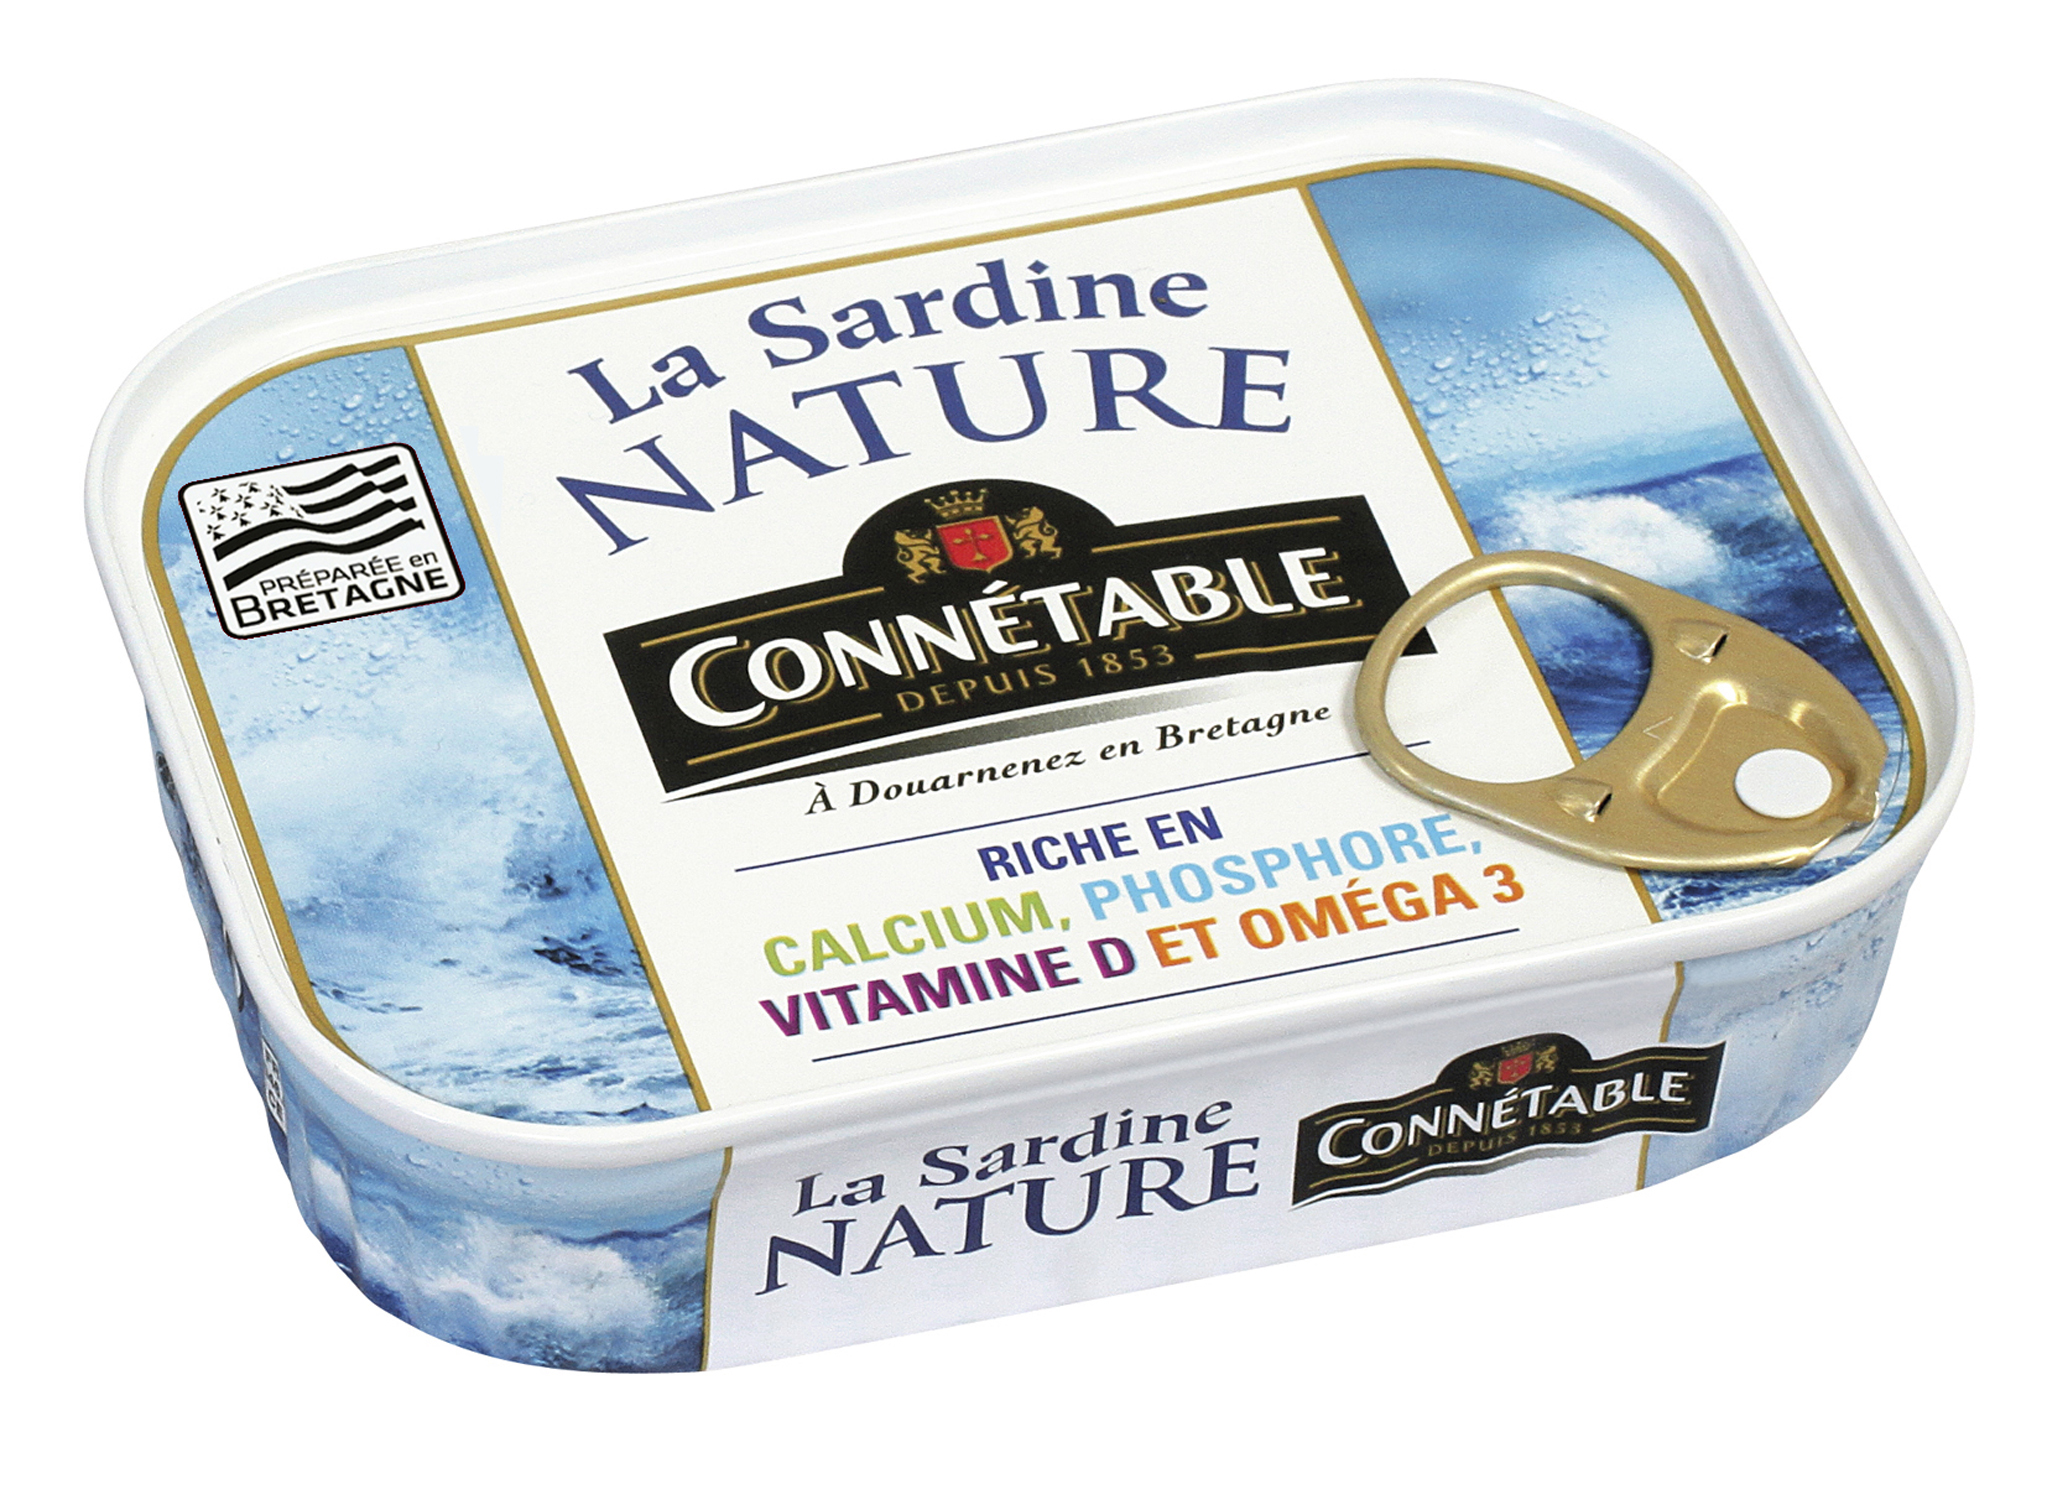 Connetable Sardines in Brine 135g